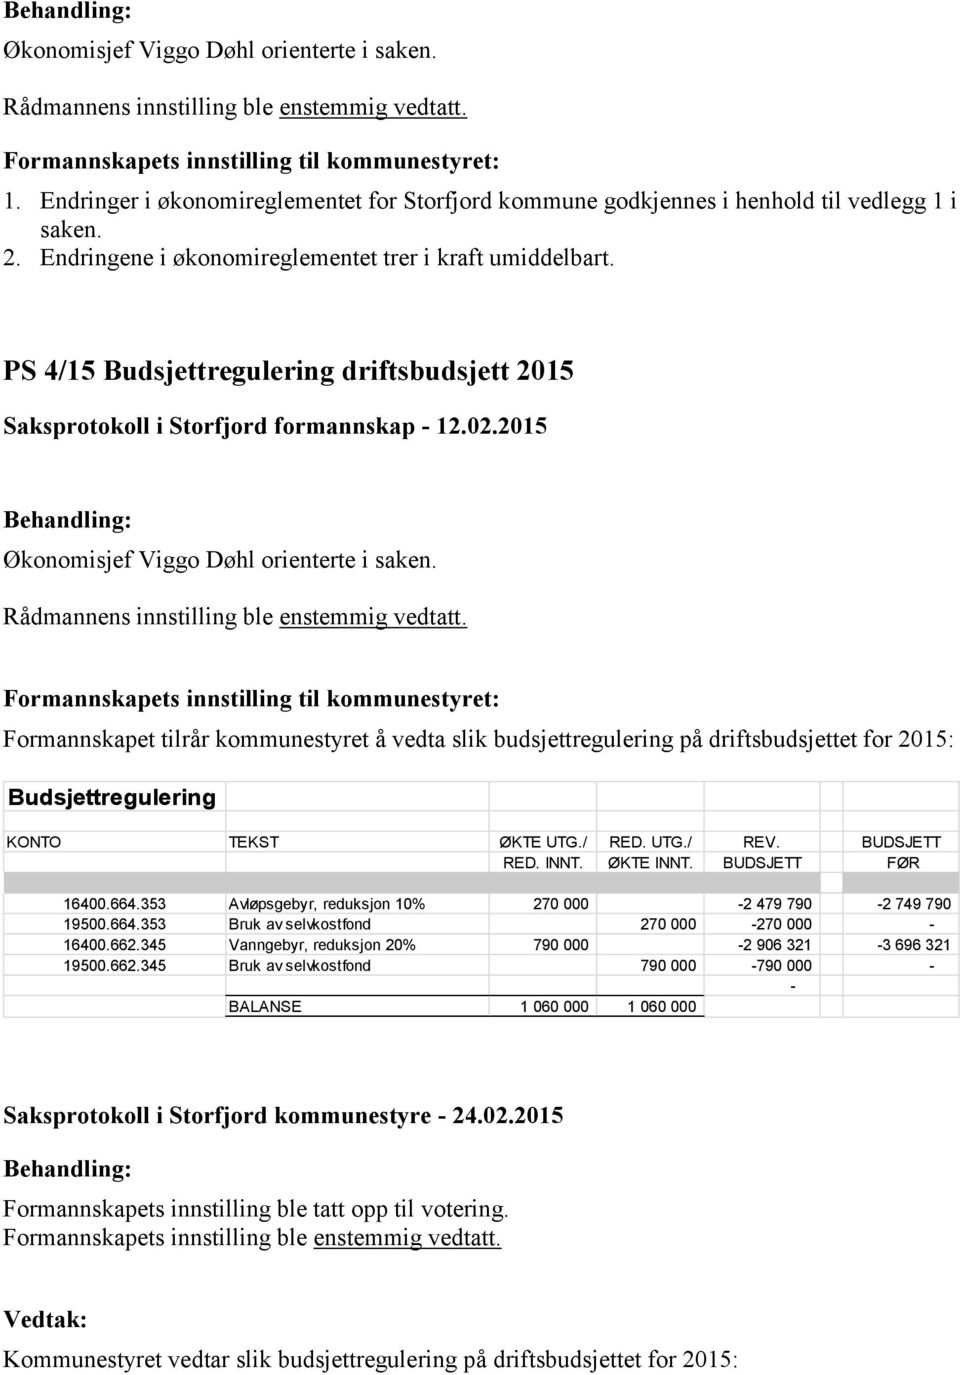 PS 4/15 Budsjettregulering driftsbudsjett 2015 Saksprotokoll i Storfjord formannskap - 12.02.2015 Økonomisjef Viggo Døhl orienterte i saken. Rådmannens innstilling ble enstemmig vedtatt.